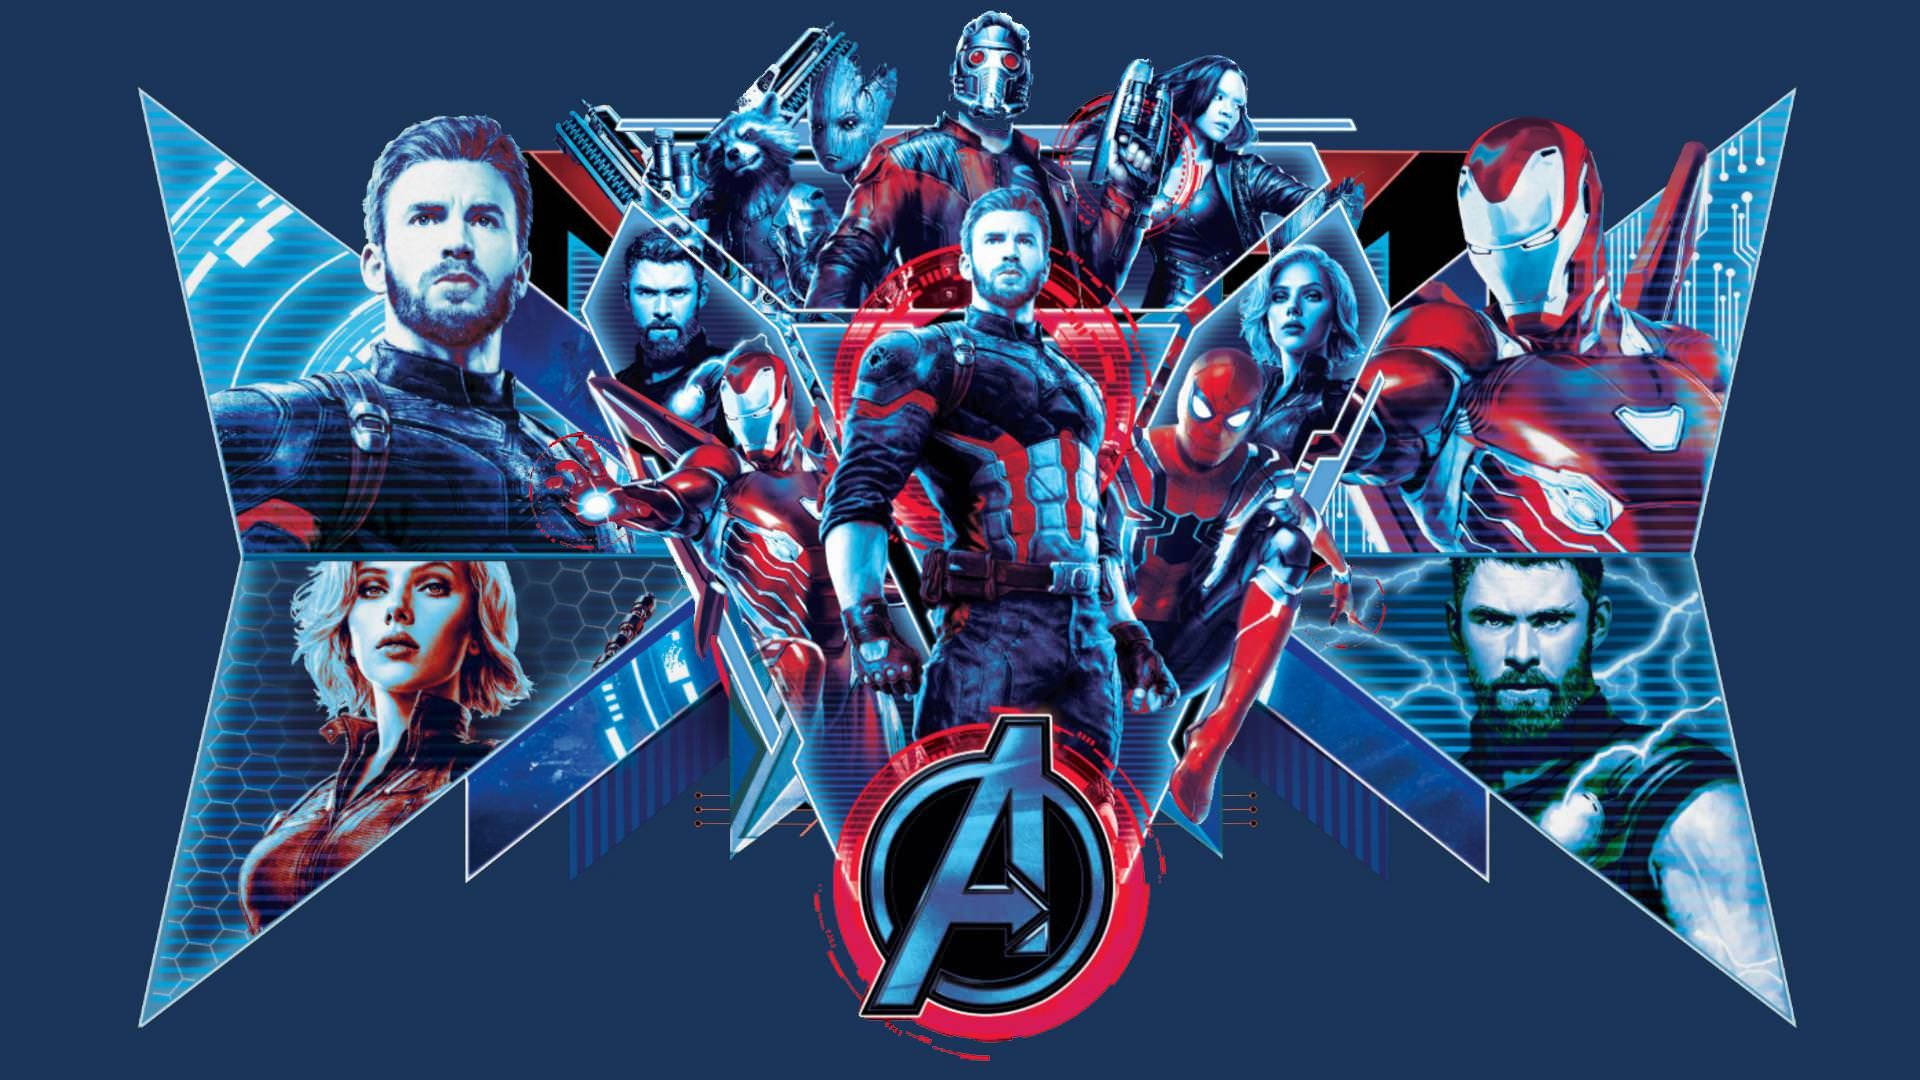 Bliv med i Avengers i deres kamp mod ondskab. Wallpaper